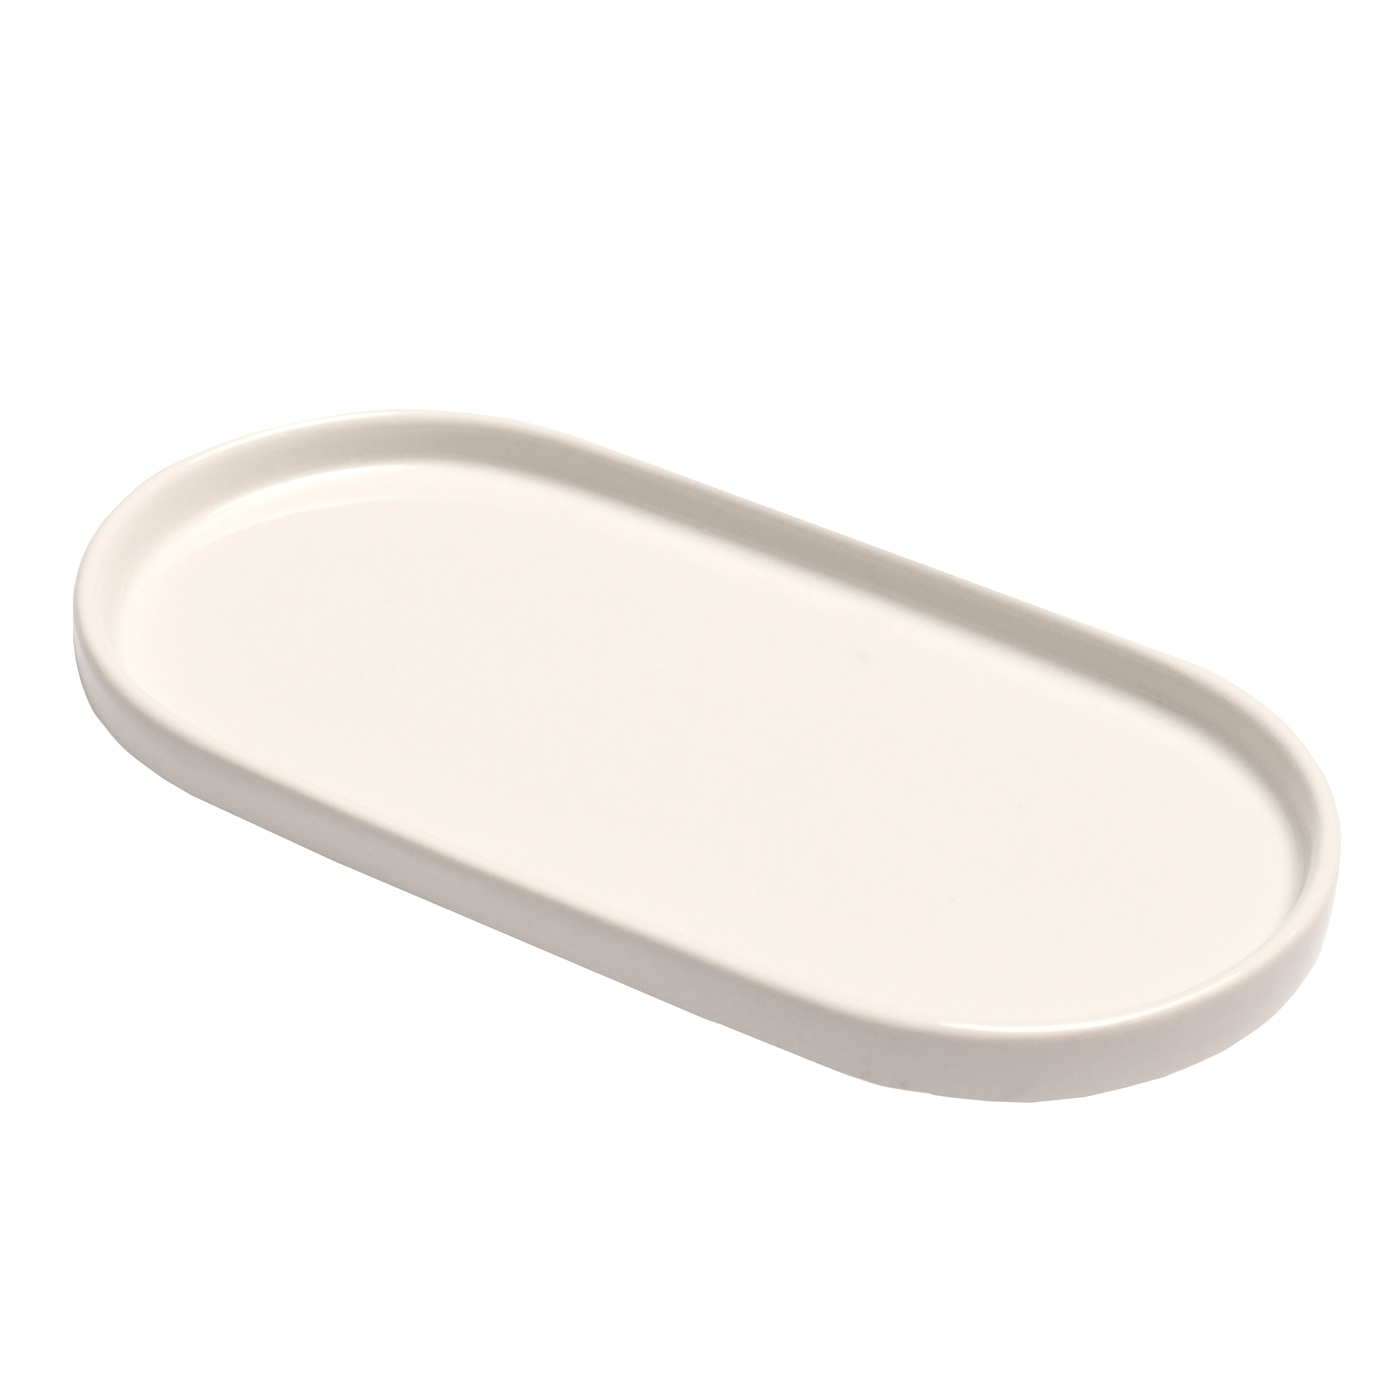 White Oblong Ceramic Plate #8703